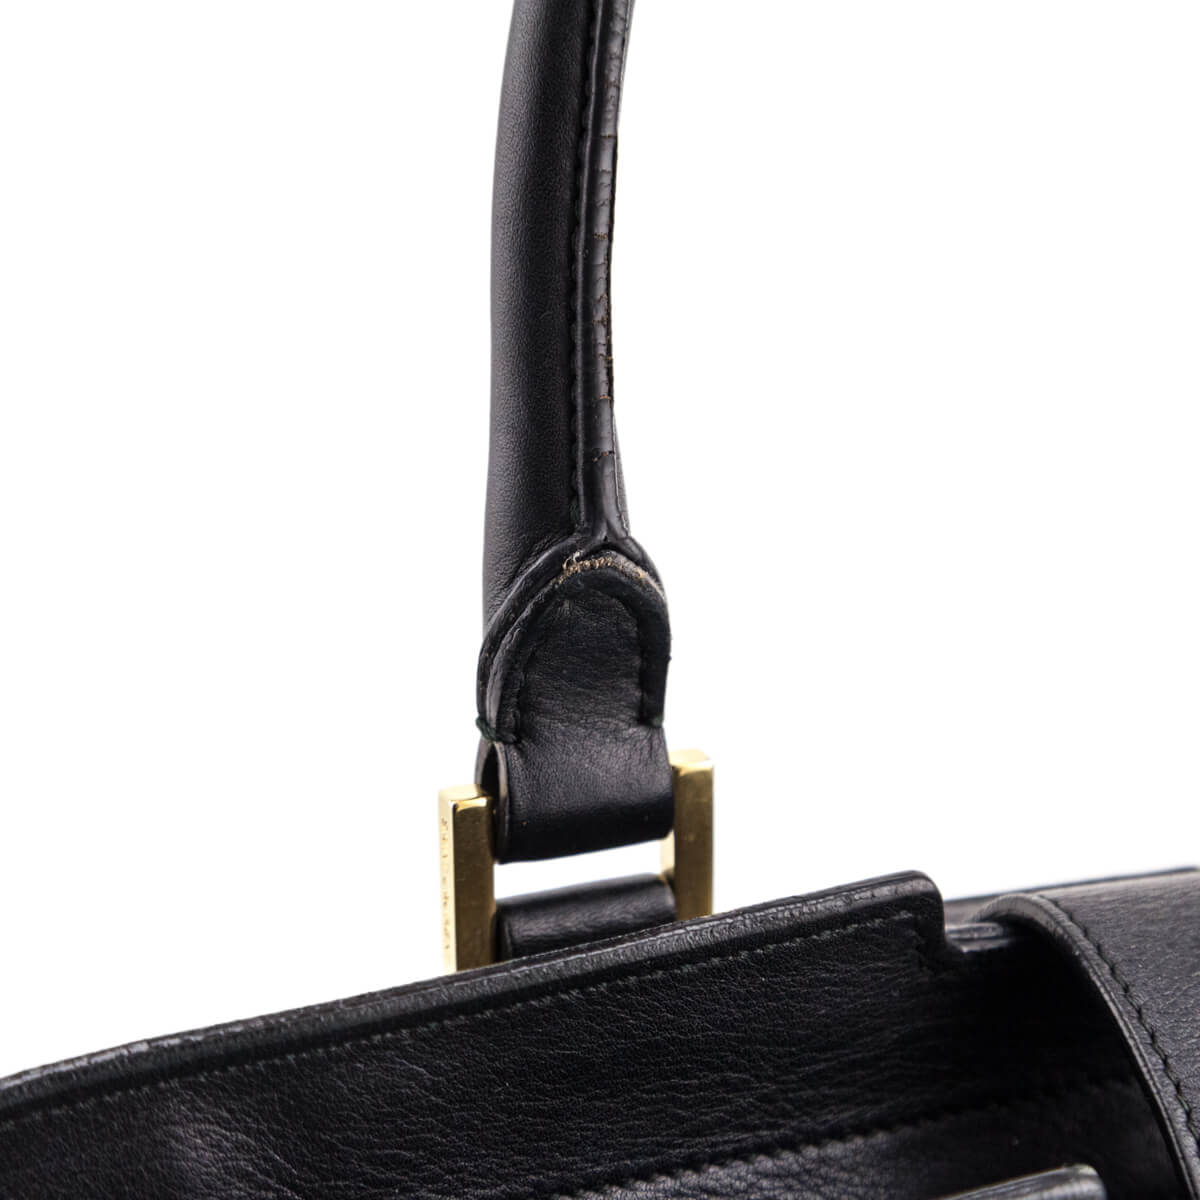 Saint Laurent so black Cabas bag – Beccas Bags